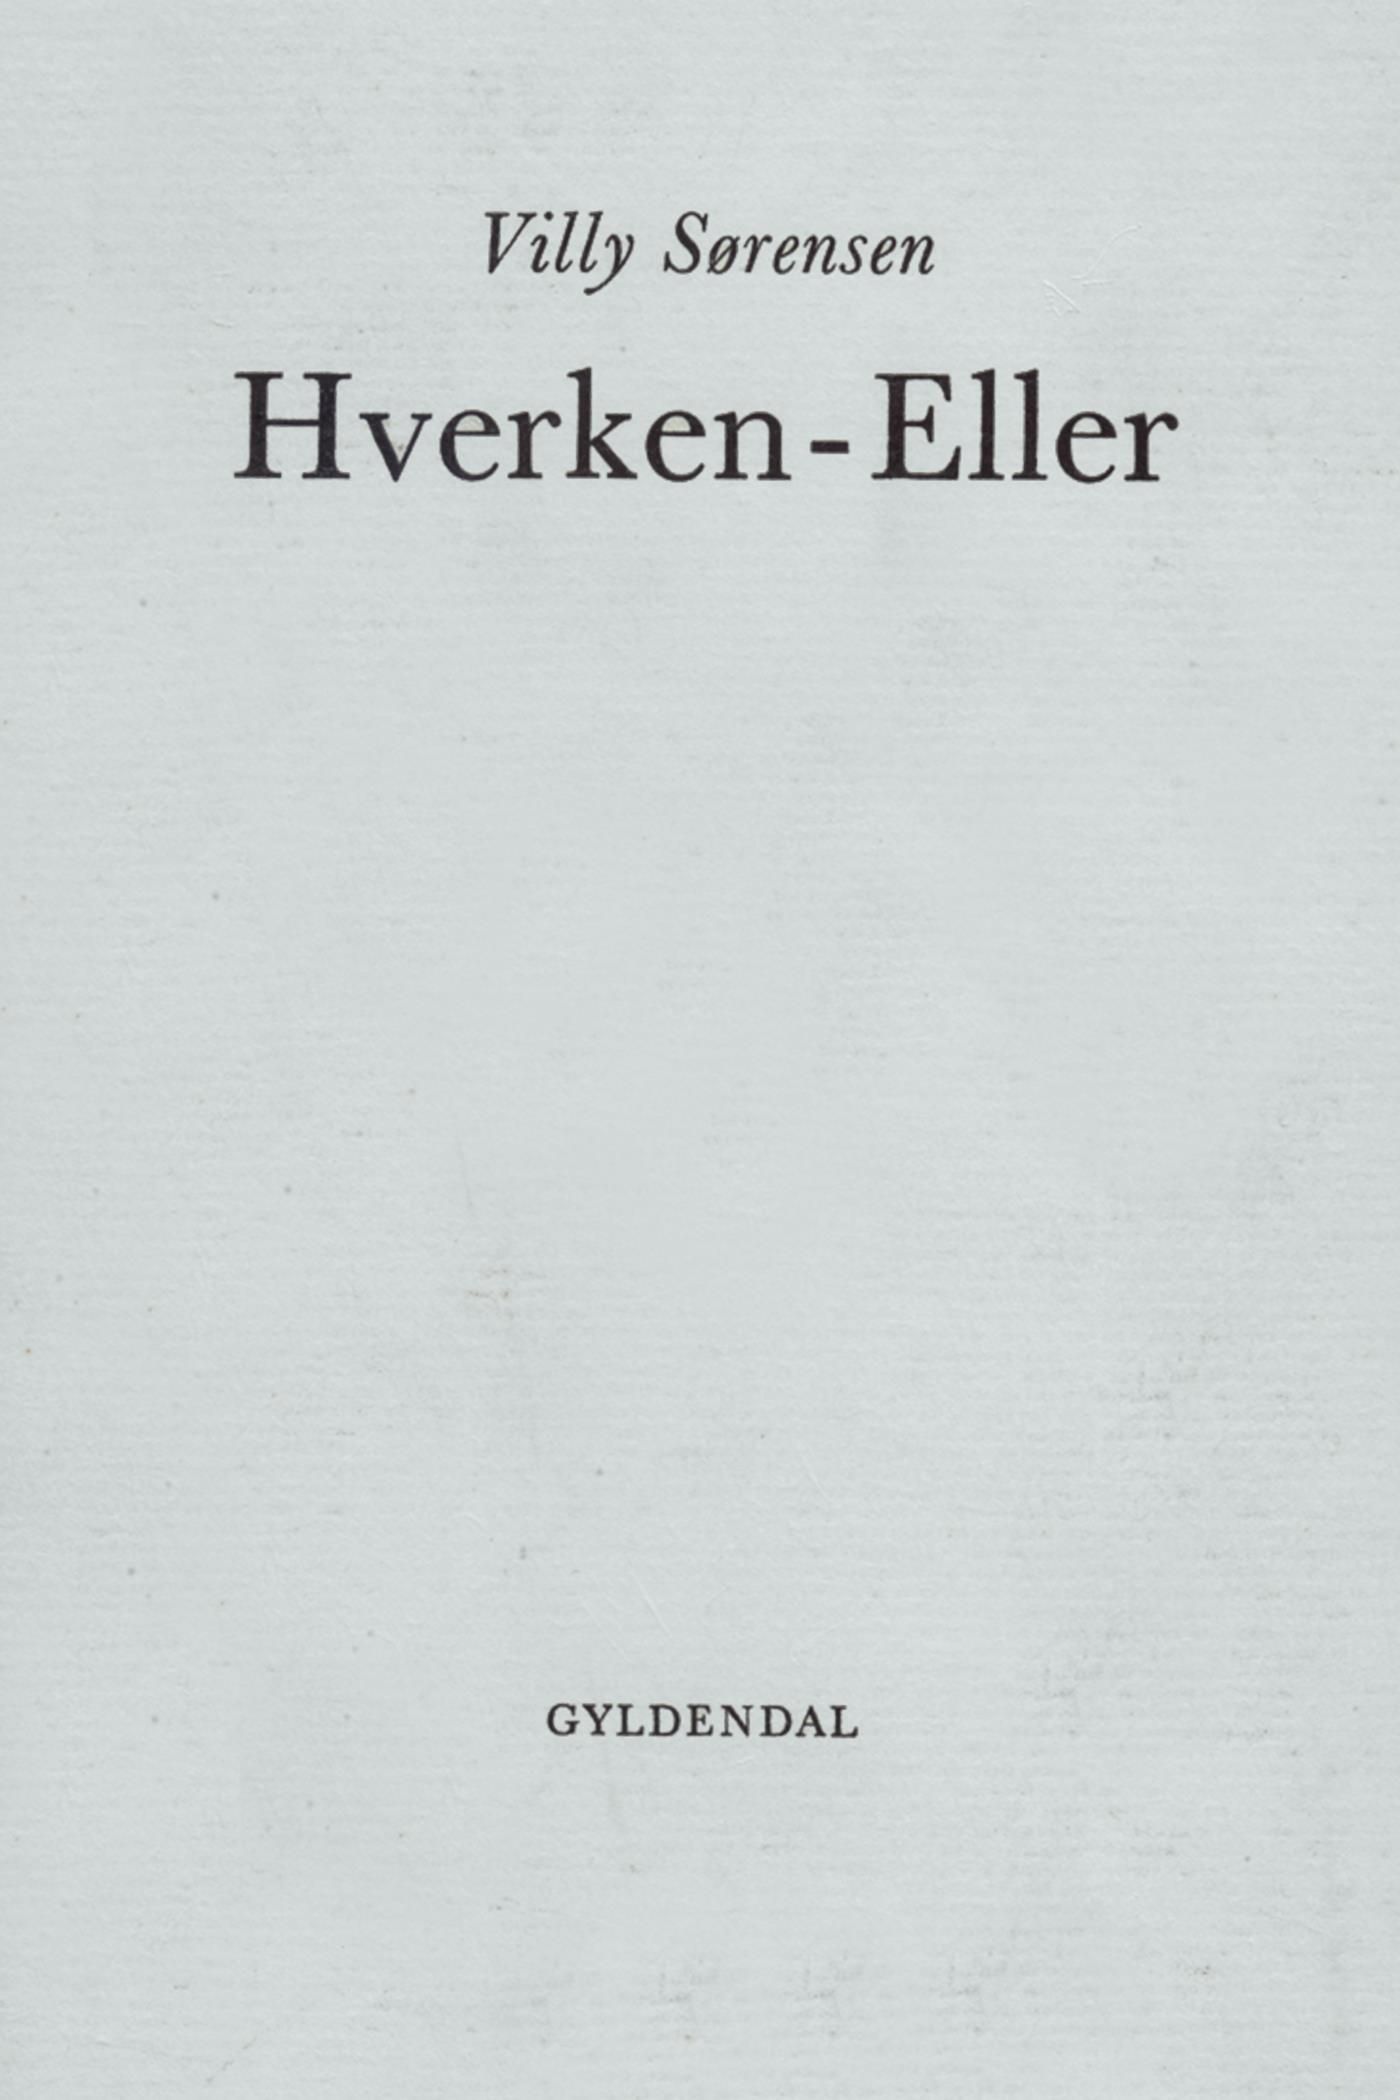 Hverken-Eller, e-bok av Villy Sørensen